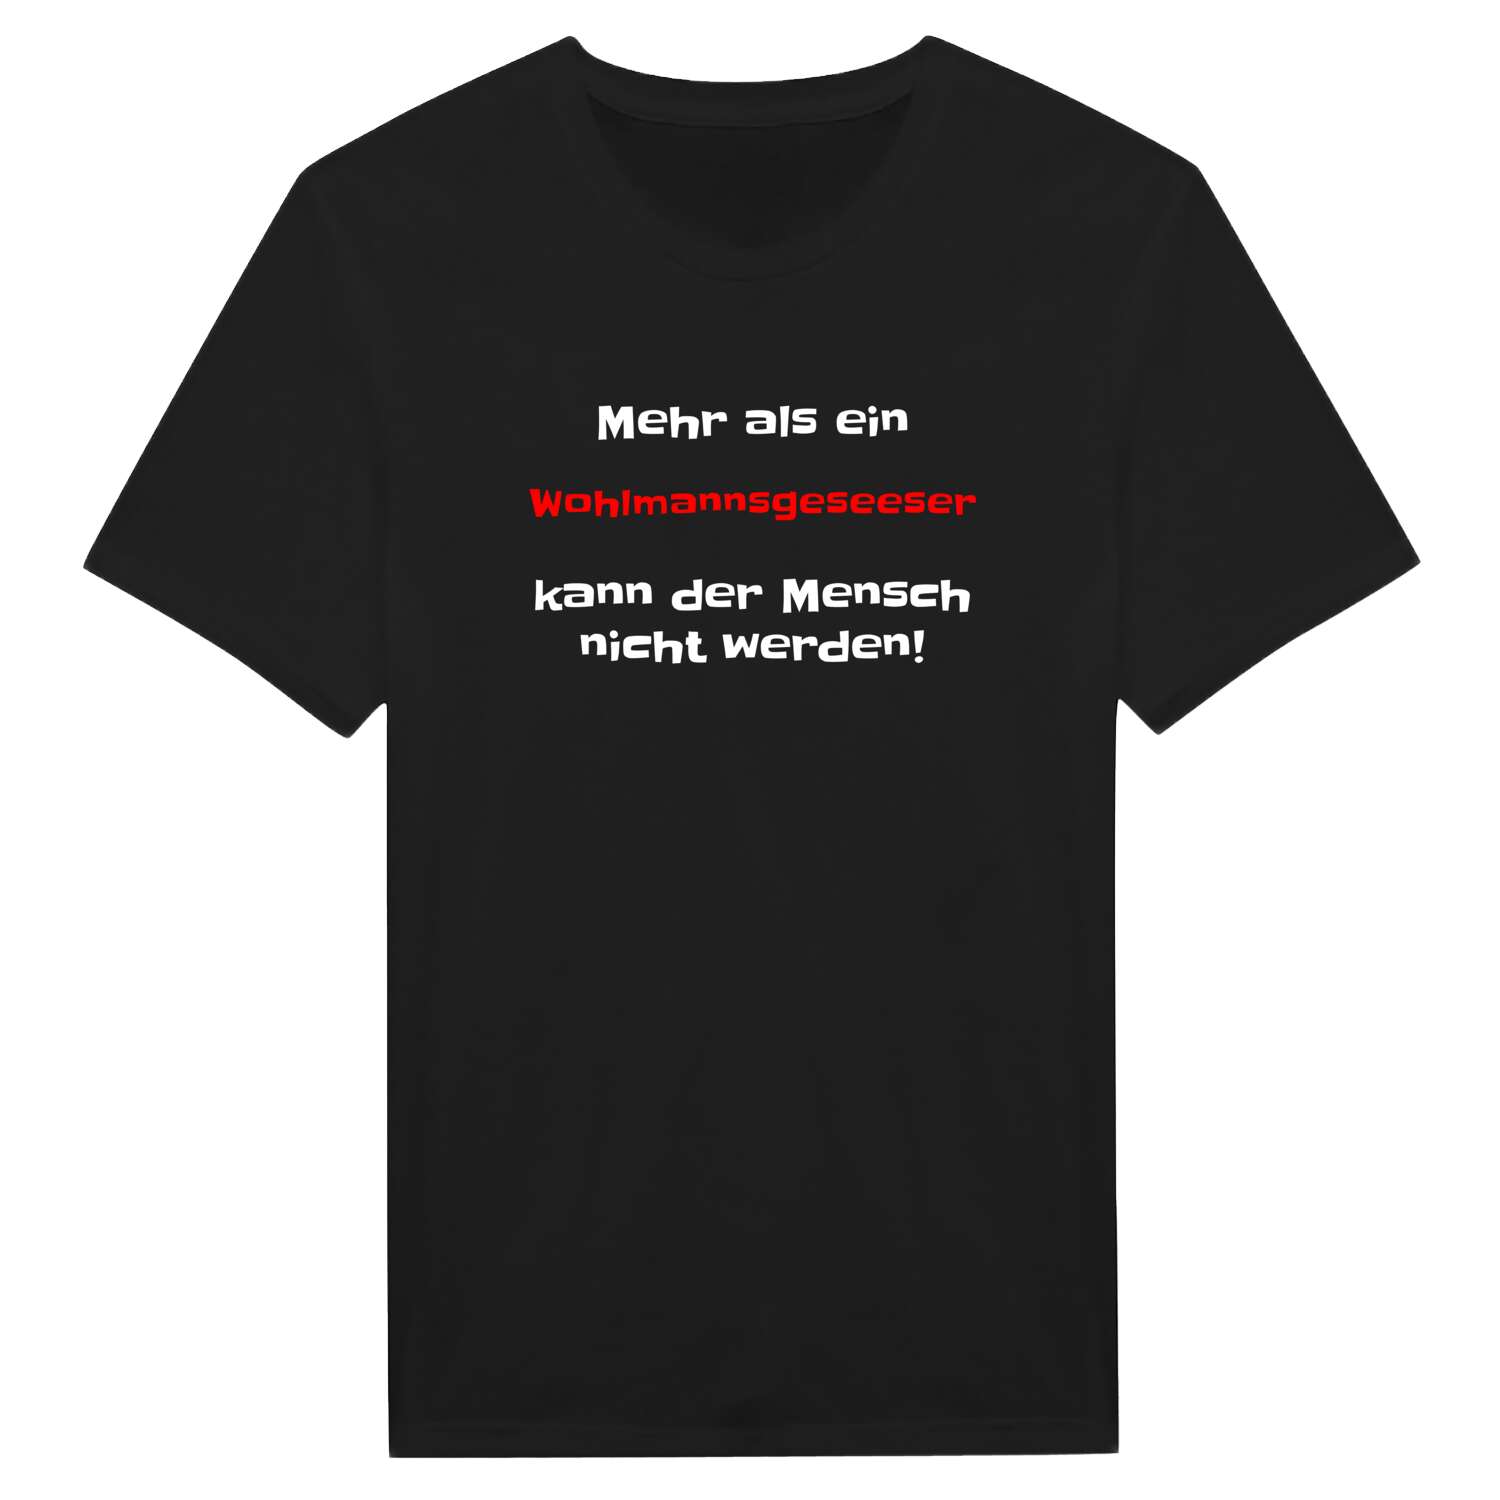 Wohlmannsgesees T-Shirt »Mehr als ein«